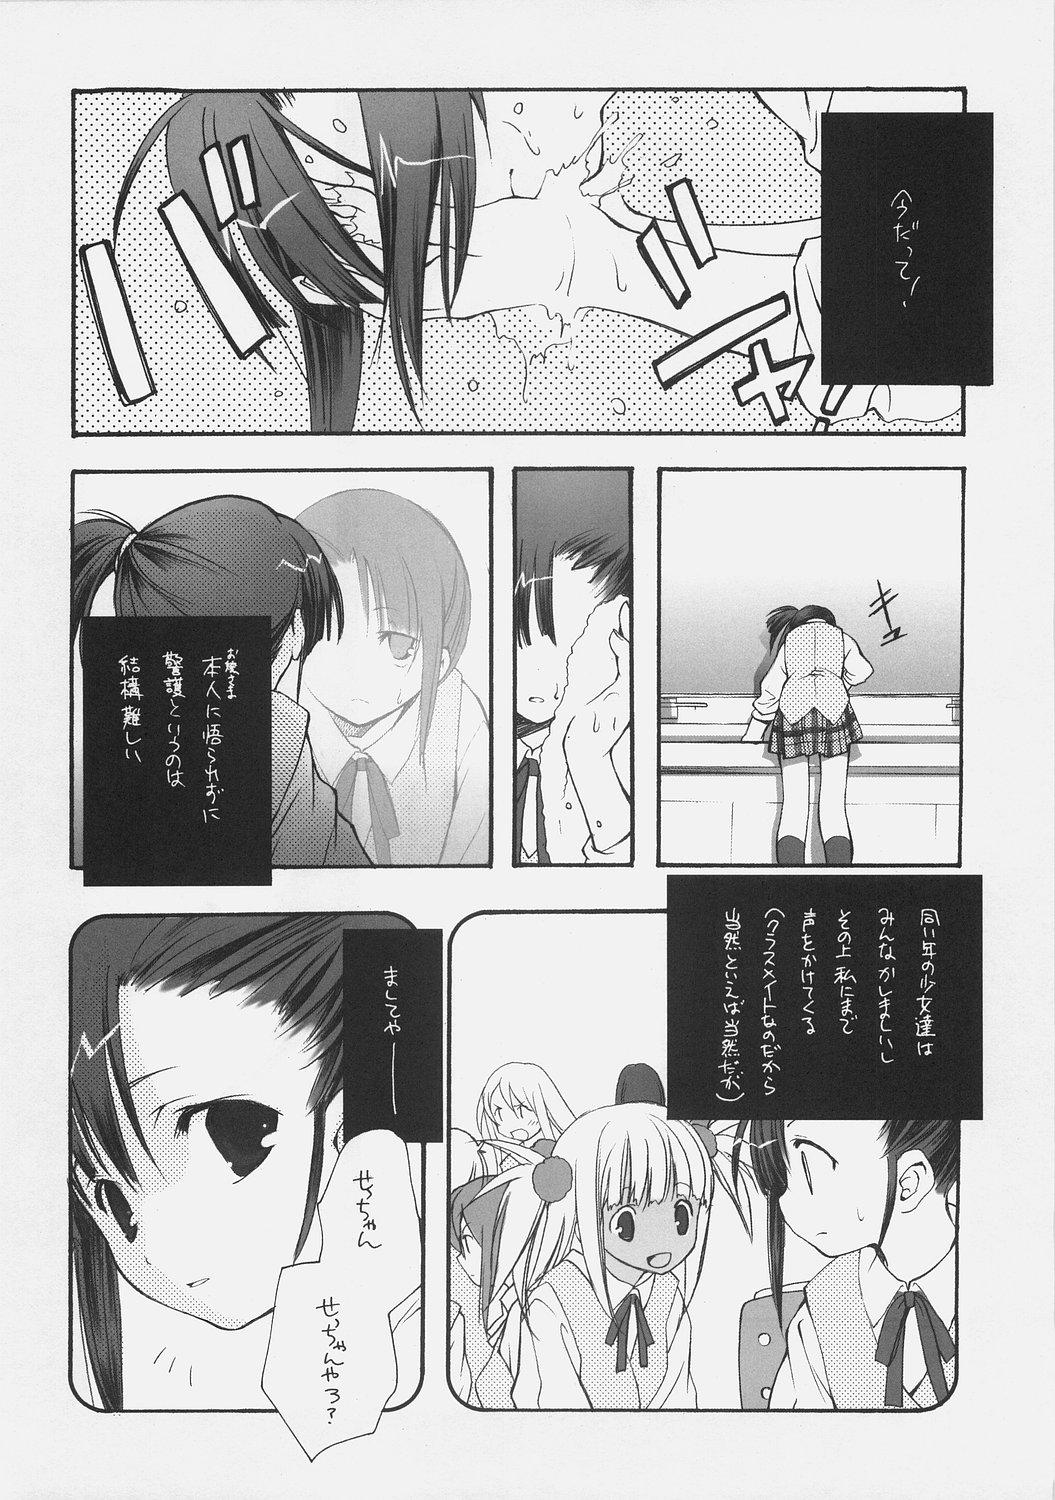 Twinkstudios KonoSetsu - Mahou sensei negima Gay Boysporn - Page 7